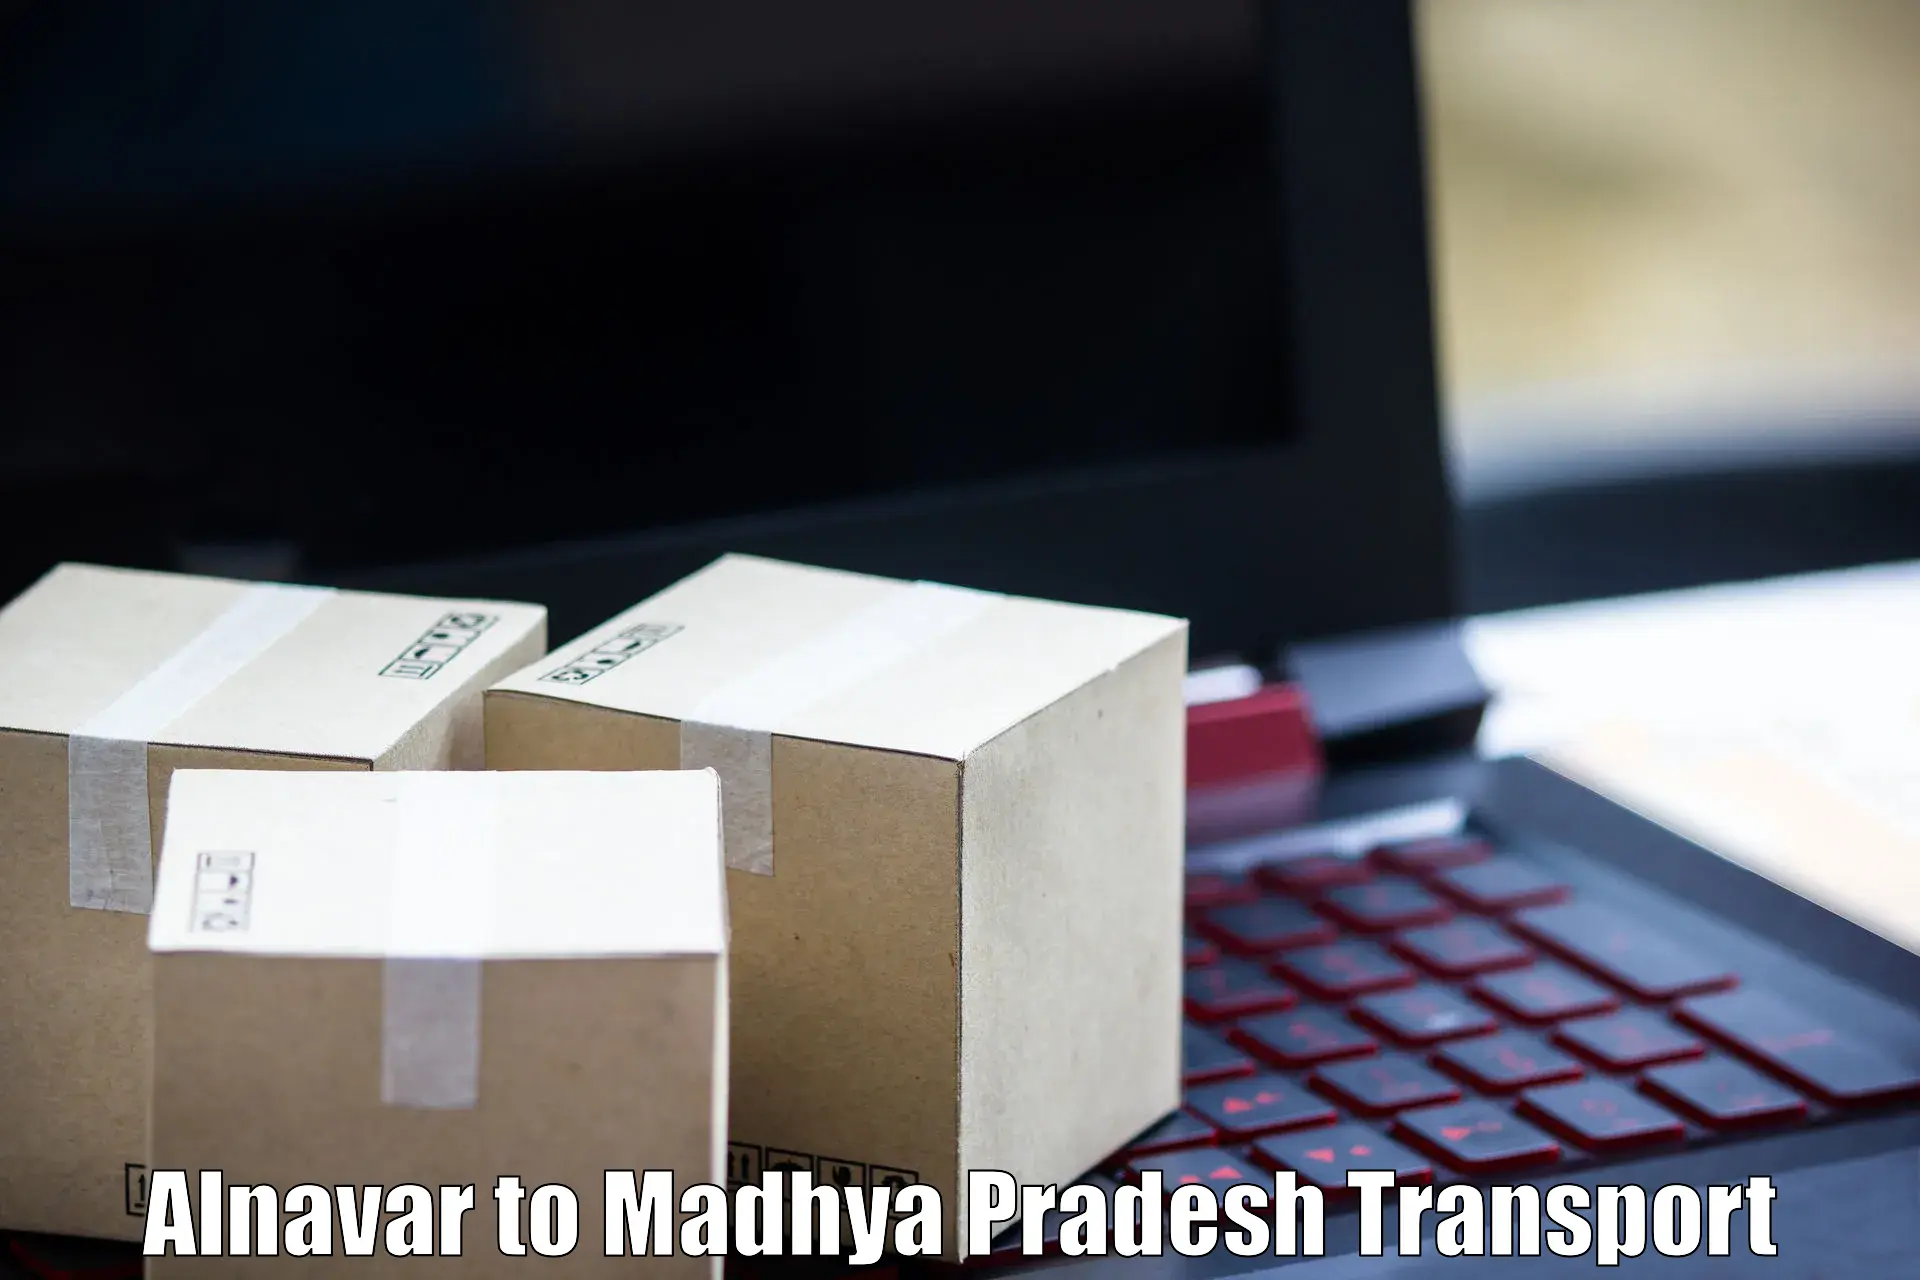 Bike shipping service Alnavar to Madhya Pradesh